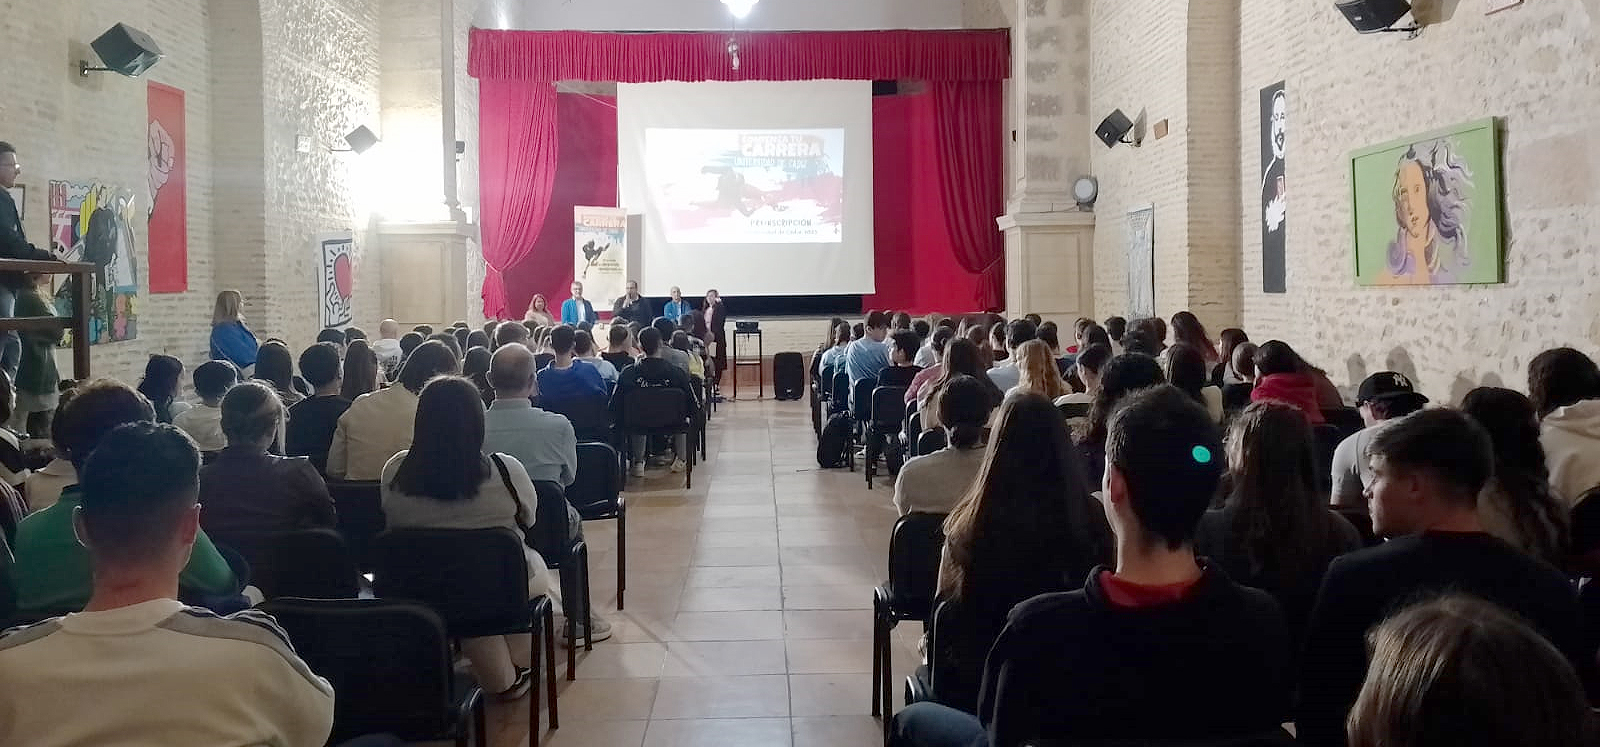 Cerca de 1.000 estudiantes de la Sierra de Cádiz participan en Bornos en las Jornadas de Orientación de la UCA